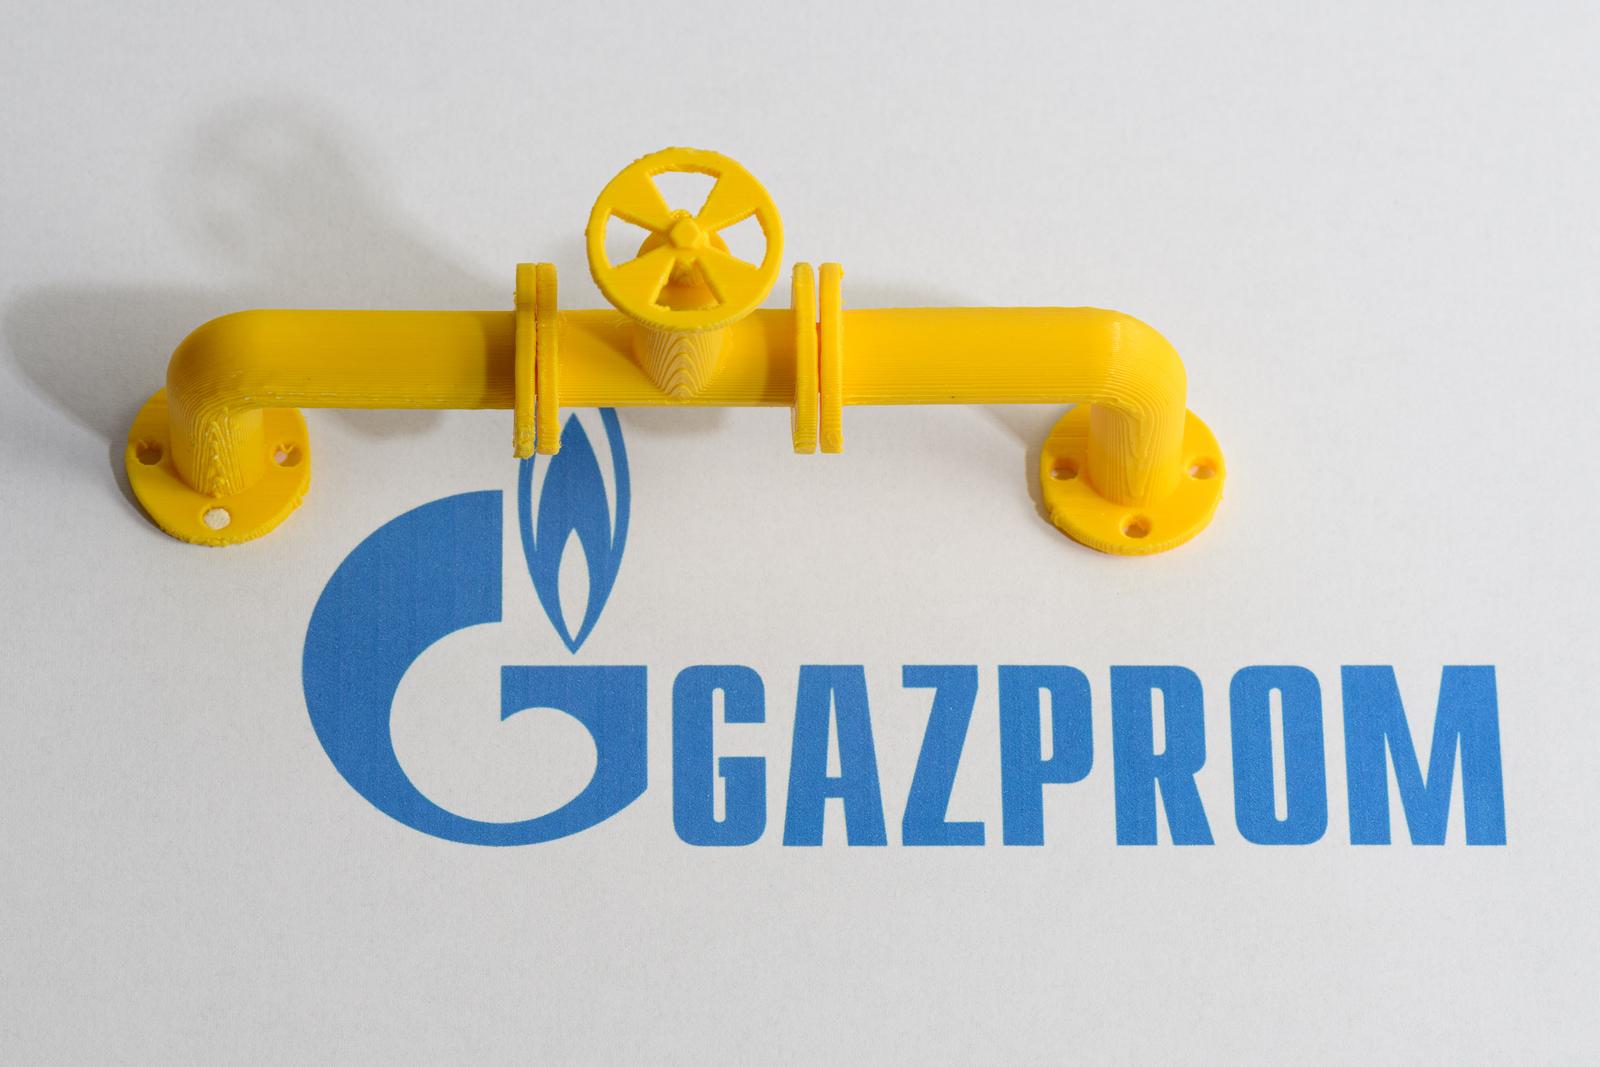 28.07.2022., Zagreb - Ruski Gazprom najveci je ponudjac zemnog plina na svijetu Gazprom  Photo: Davor Puklavec/PIXSELL